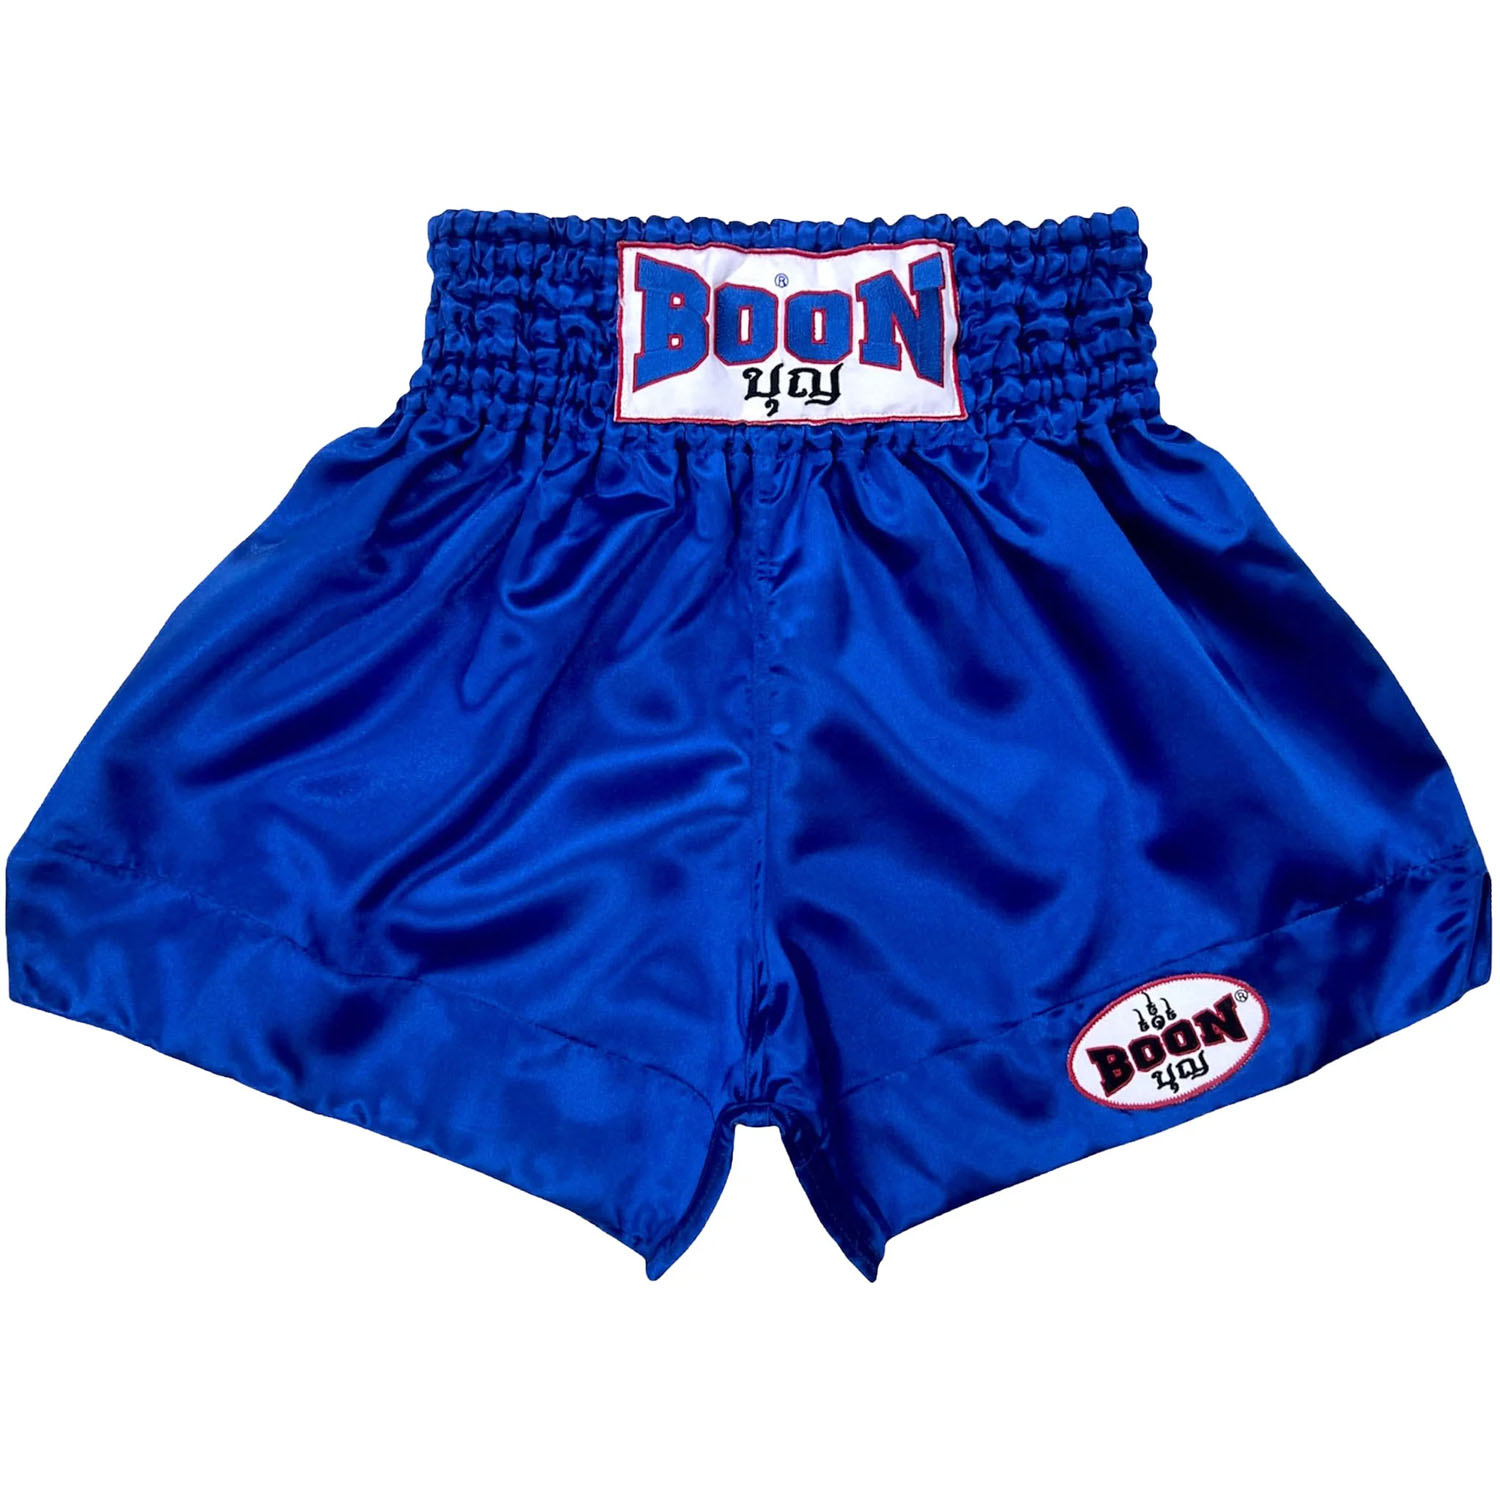 BOON Muay Thai Shorts, MT01, Plain, blau